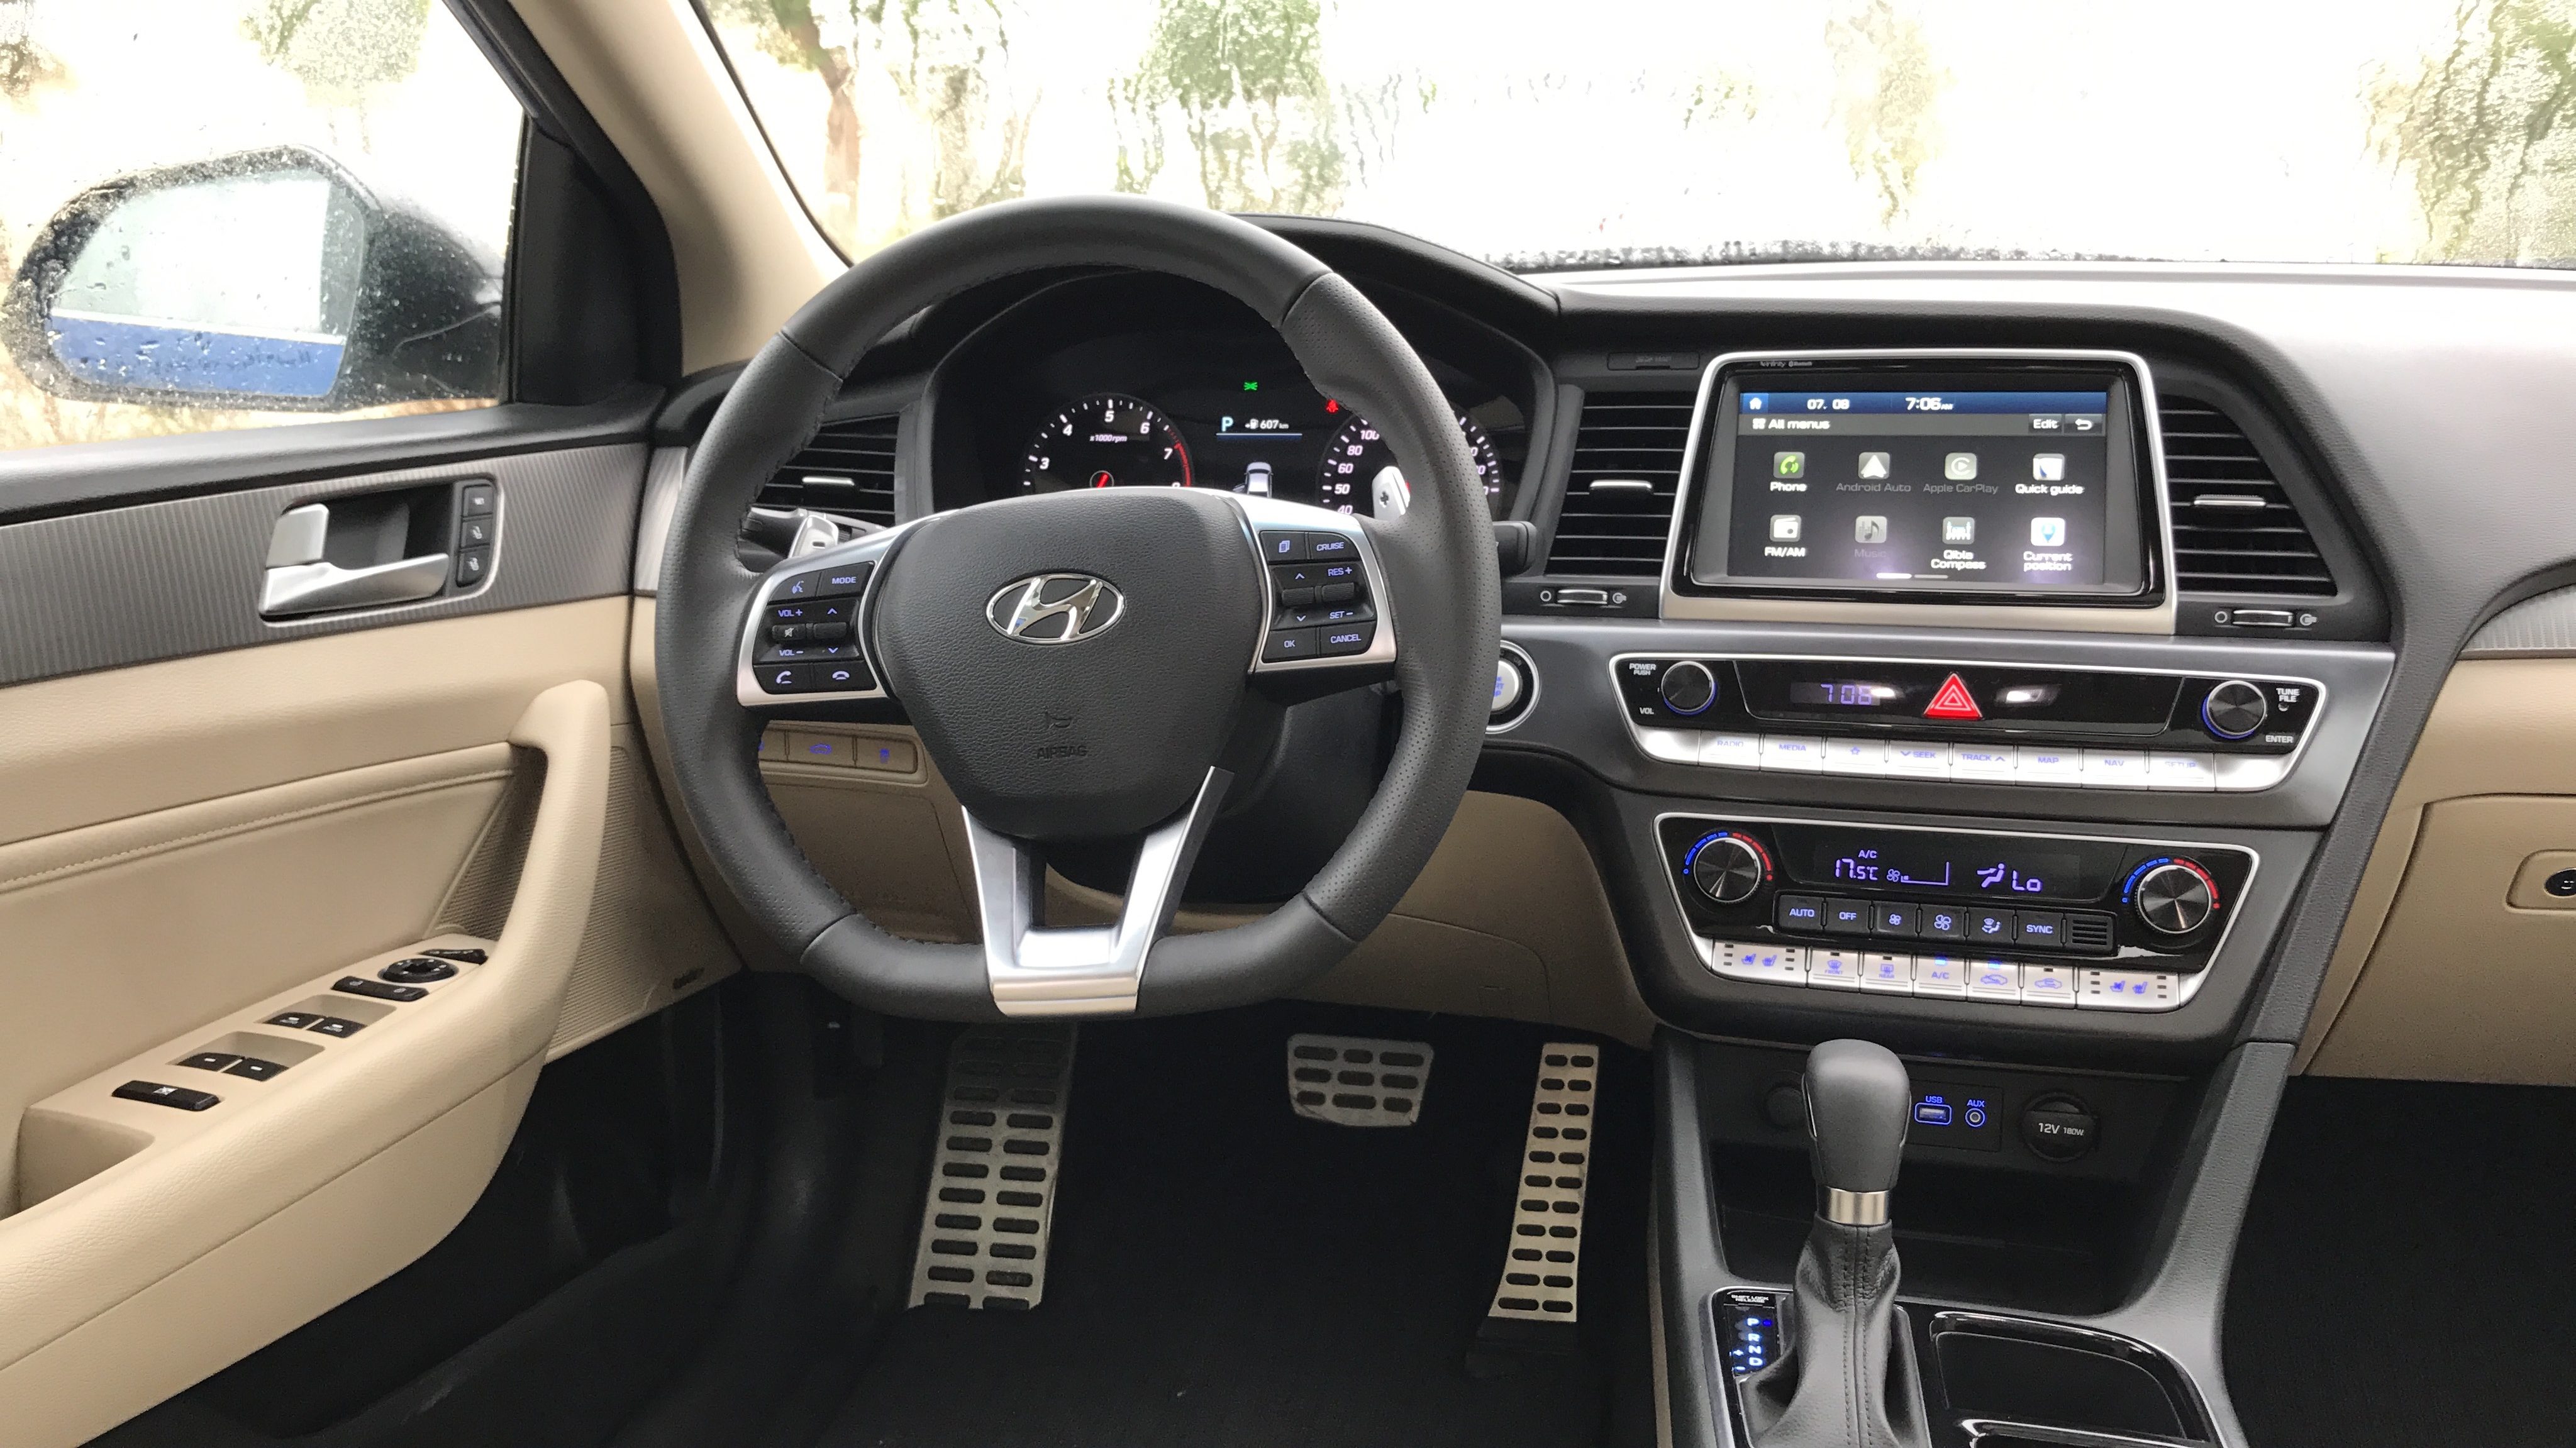 هيونداي سوناتا 2018 الشكل المحدث "صور ومواصفات واسعار وتقرير" Hyundai Sonata 19